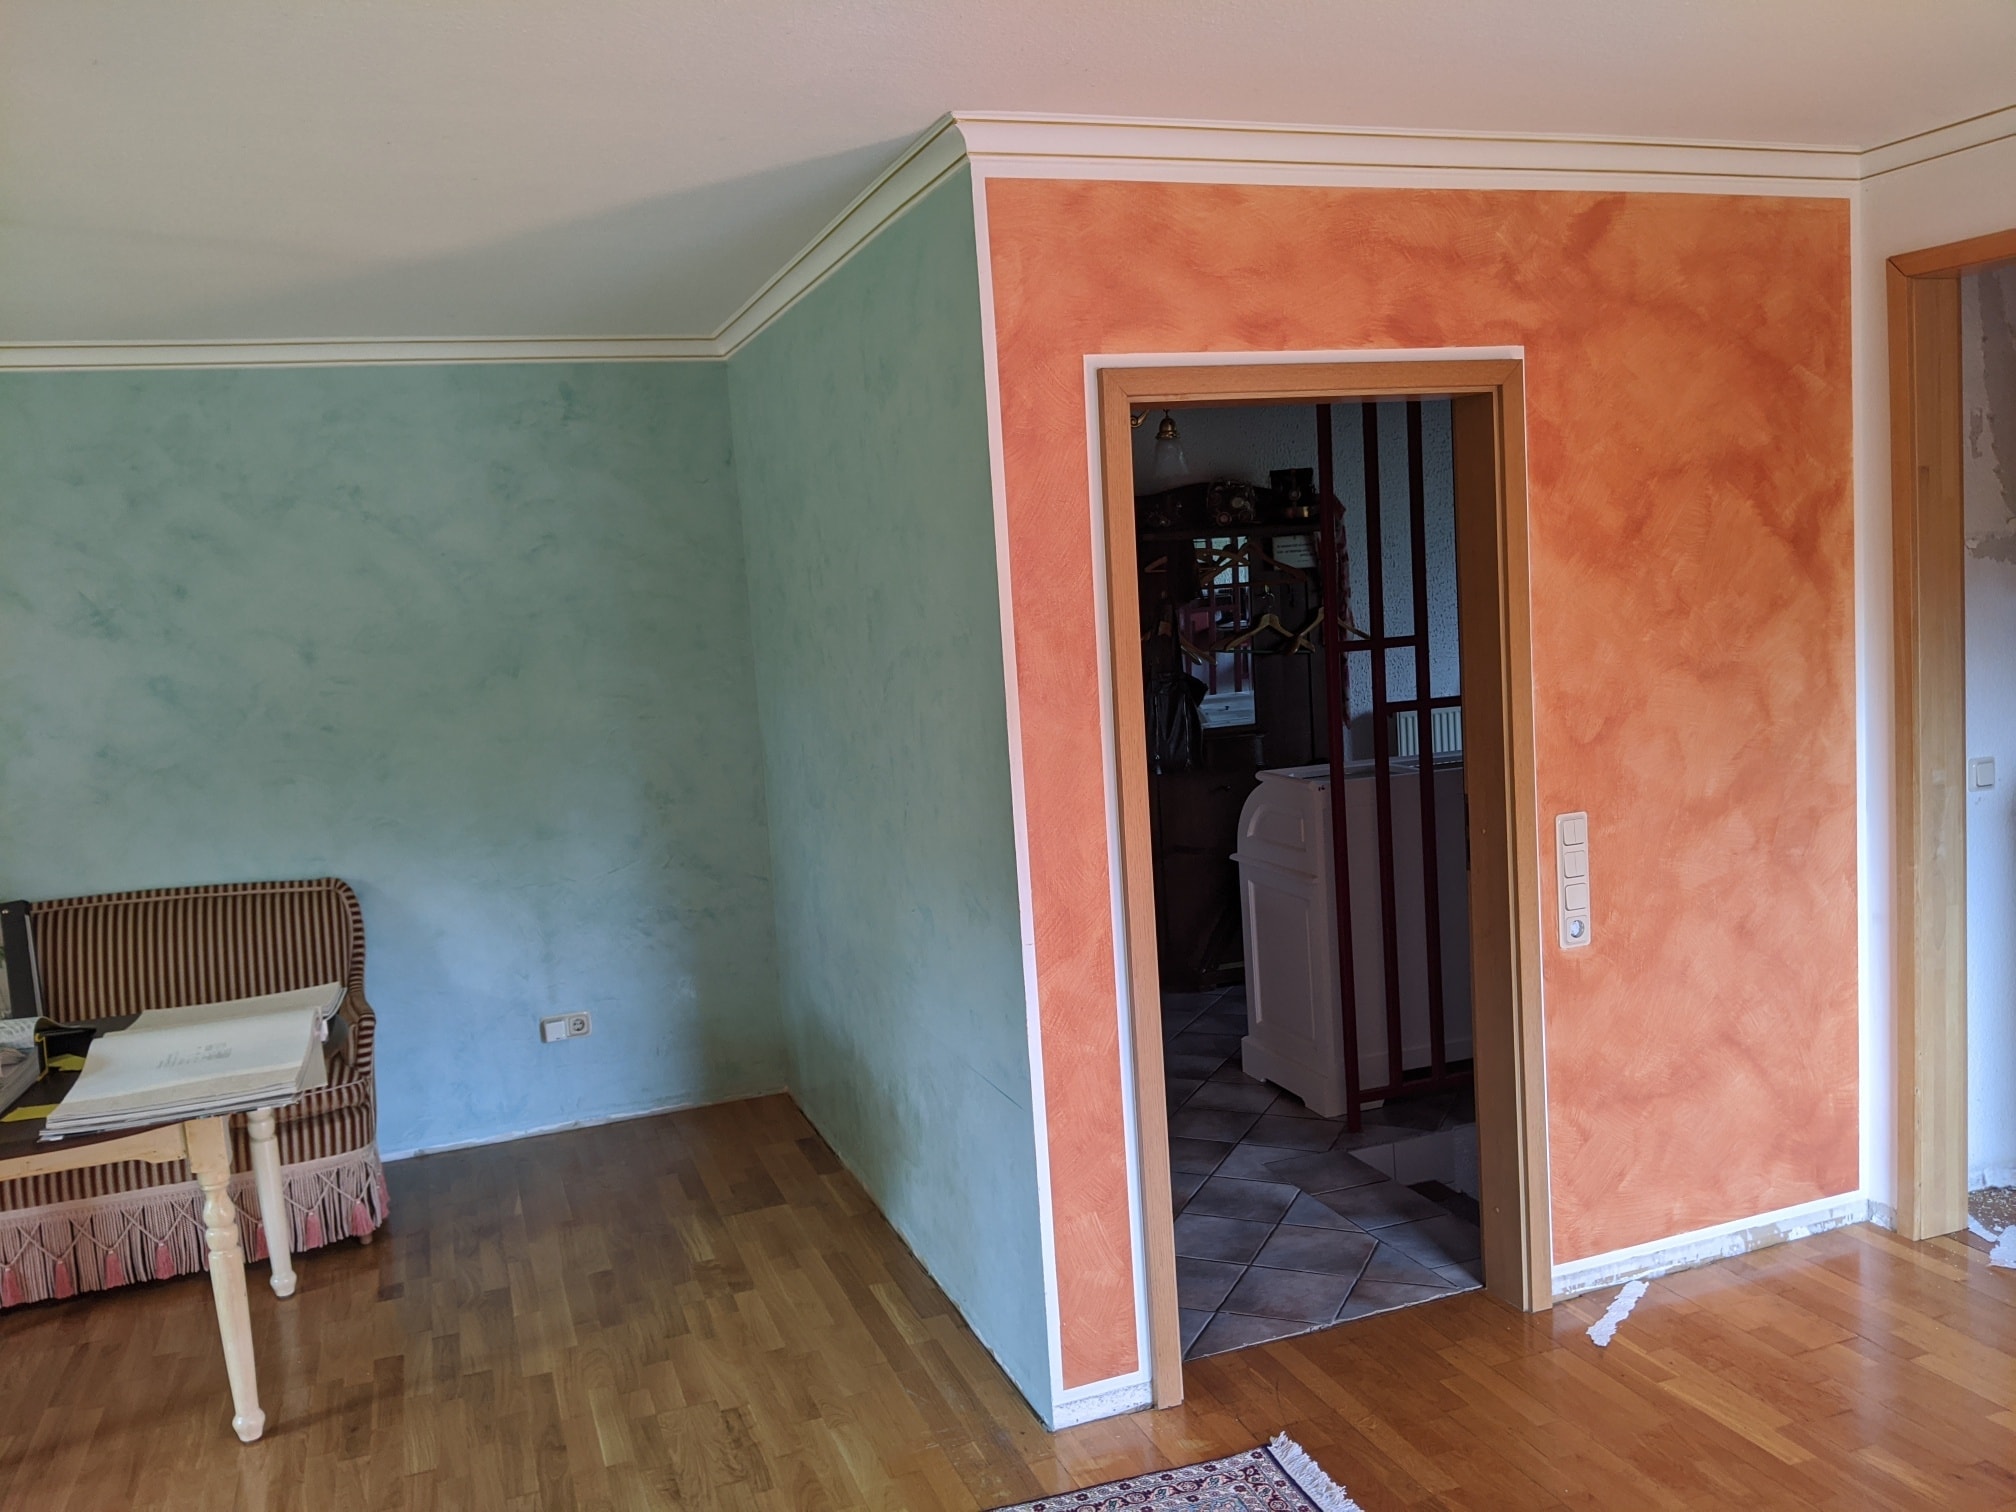 Eine altrosa Wand und eine türkise Wand in einem Zimmer vor den Malerarbeiten. Der Farbkontrast ist furchtbar.